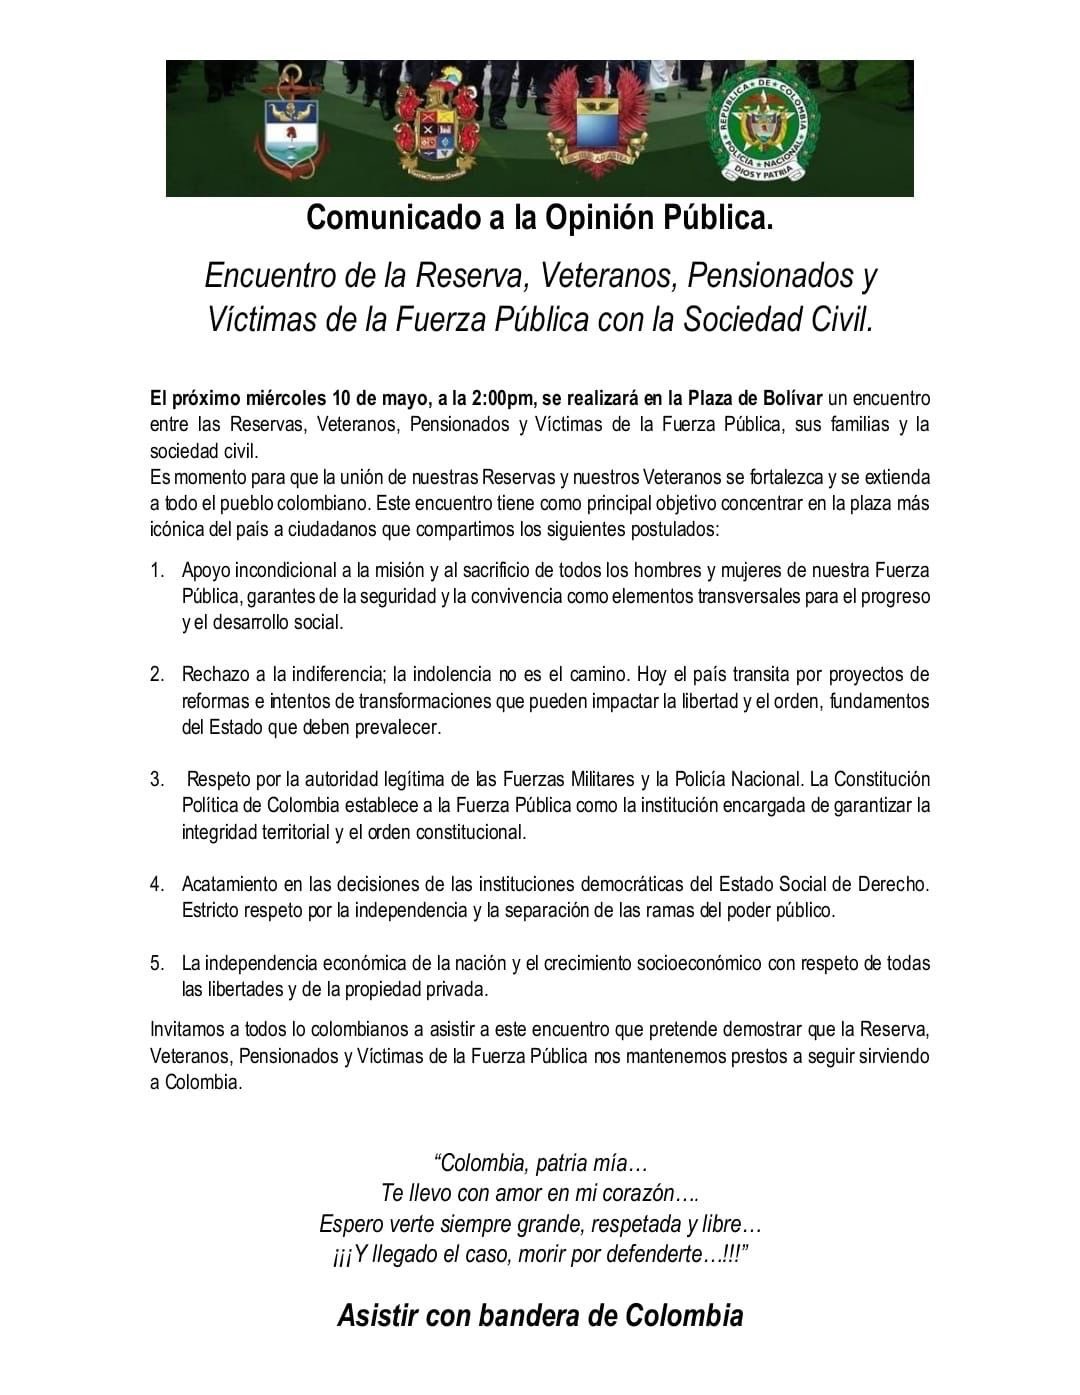 Comunicado a la opinión pública de la manifestación que se desarrollará el miércoles 10 de mayo en Bogotá. Rafael Alfredo Colón Torres / @rafacolontorres